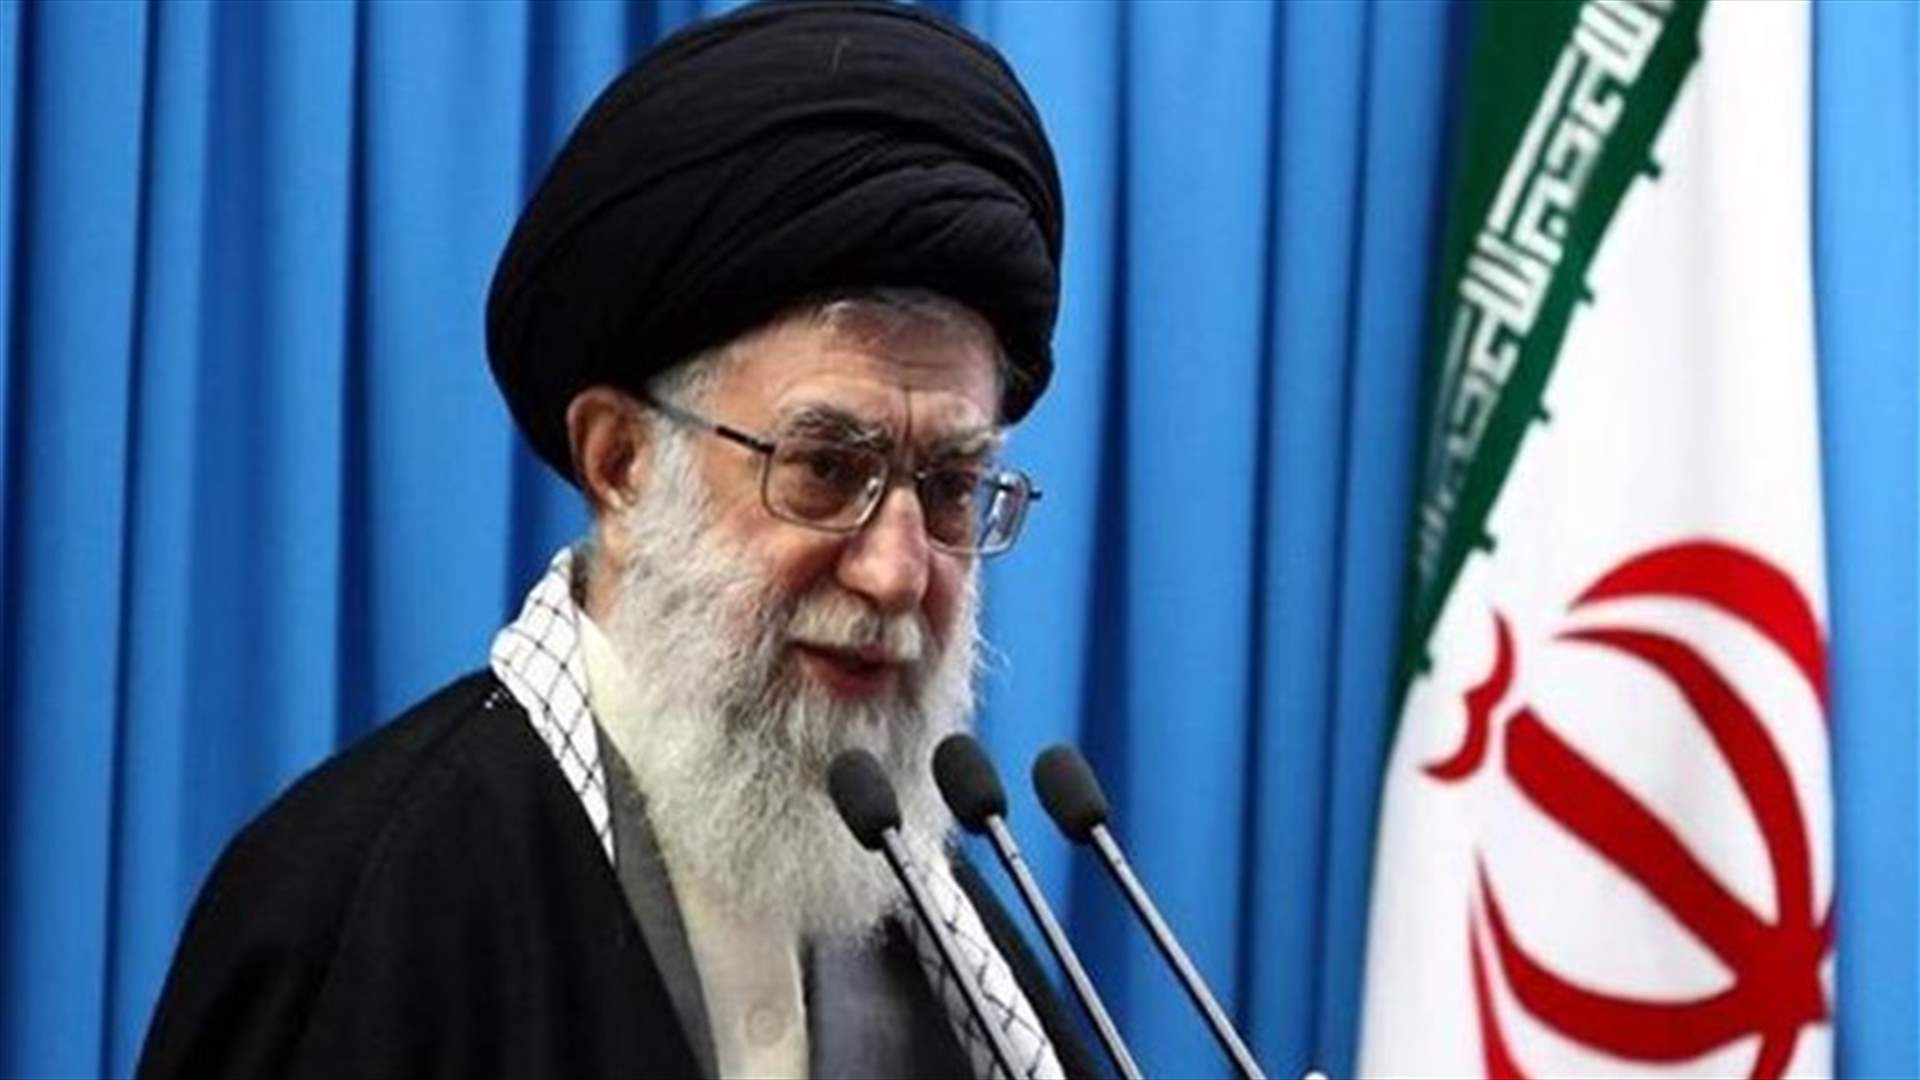 خامنئي: إيران ستردّ على احتجاز ناقلة النفط في جبل طارق في الفرصة والمكان المناسبين